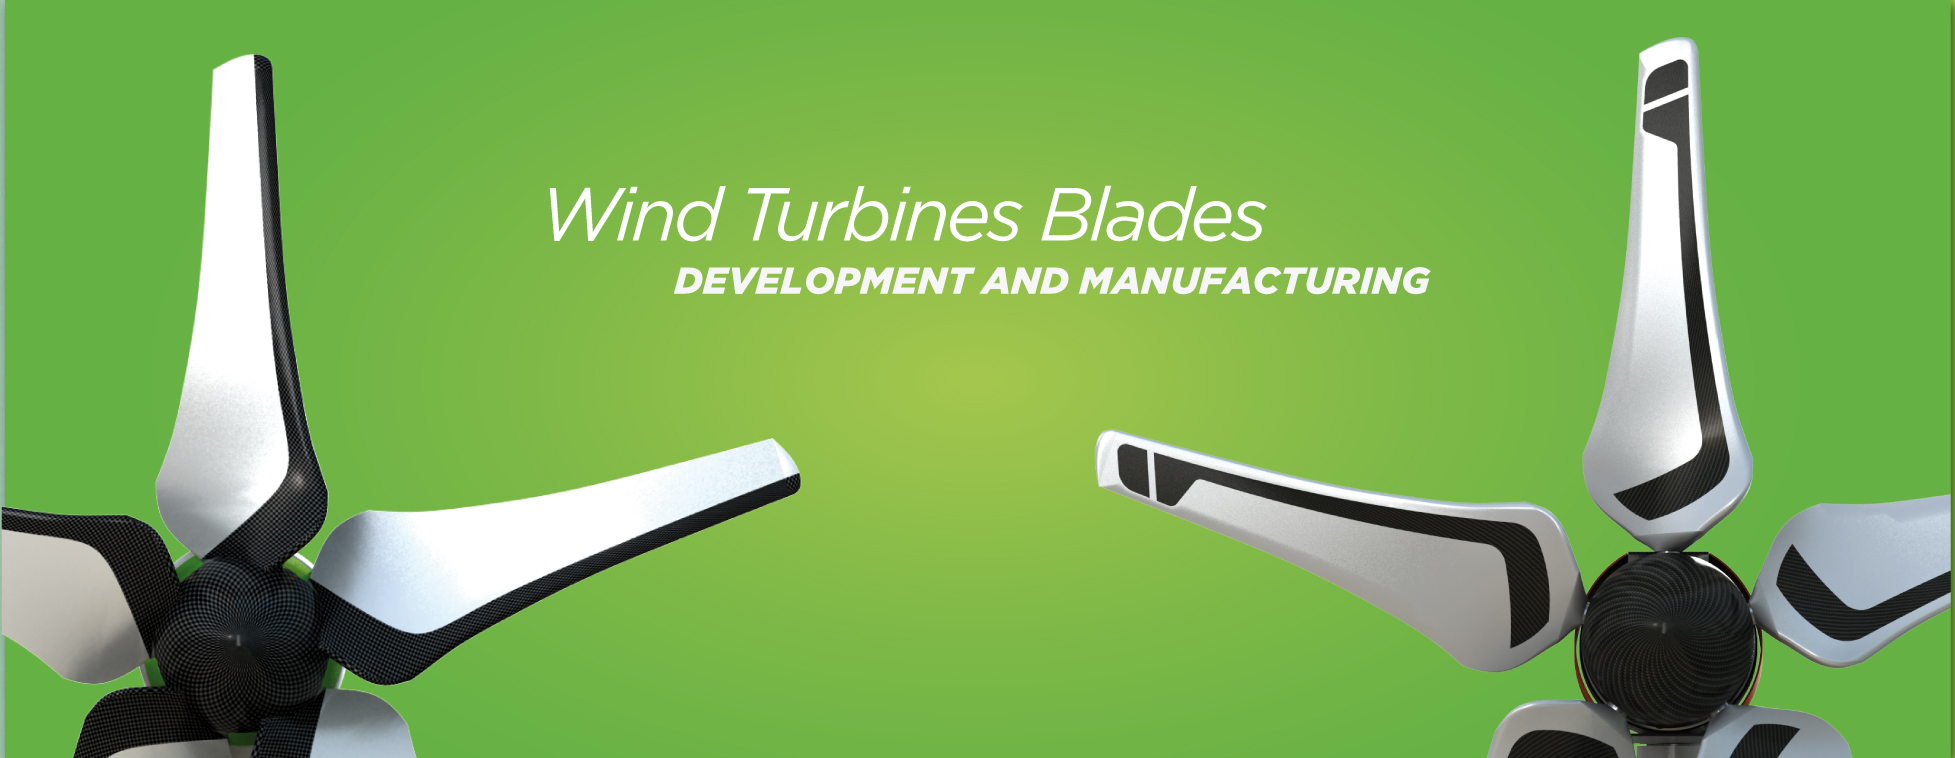 Lightwind Turbines Blades